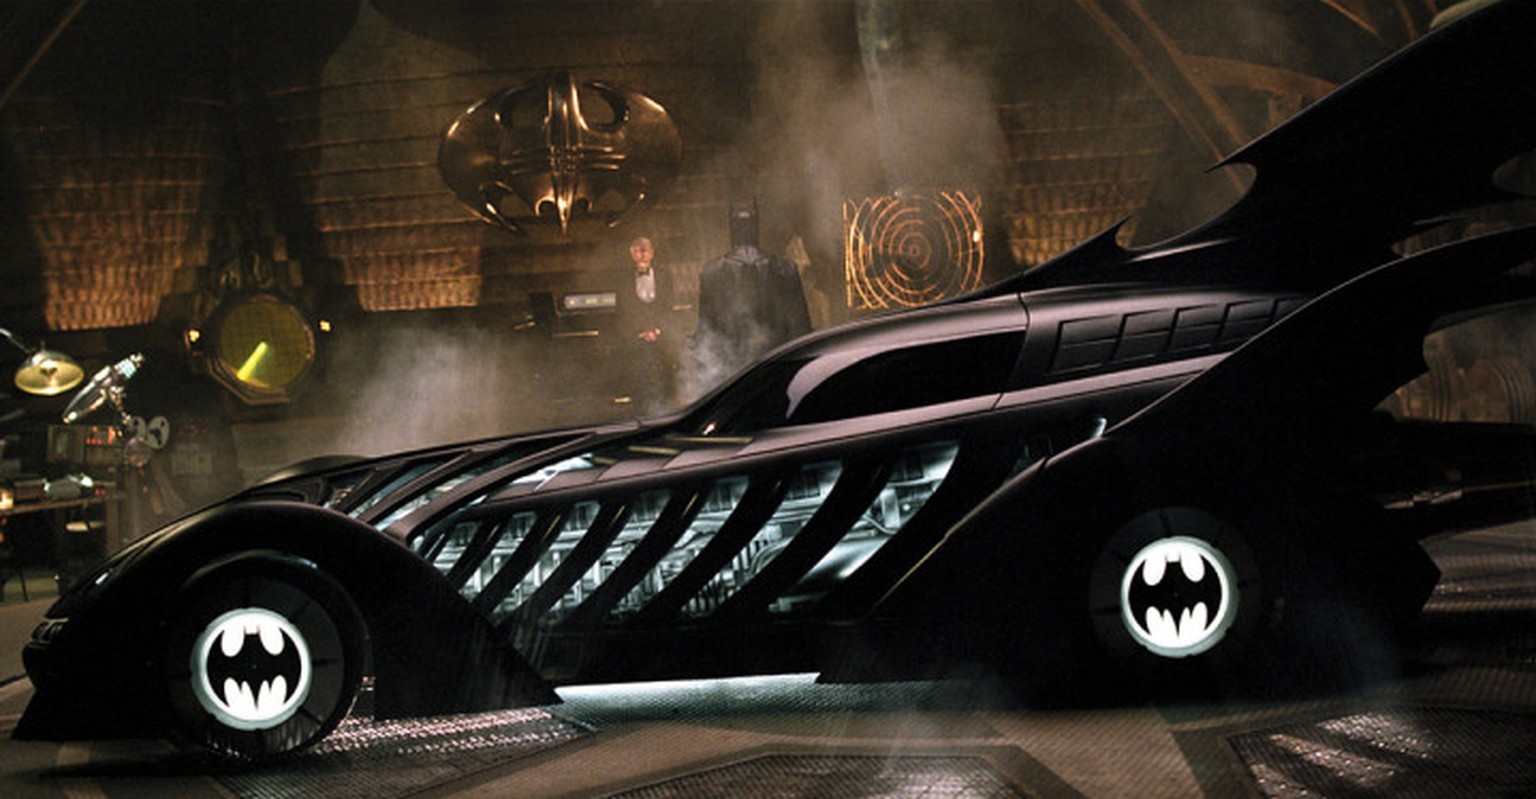 Joel Schumacher Batmobile auto design batman dc comics movie film https://entertainment.time.com/2012/07/16/batmans-ride-the-complete-history-of-the-batmobile/photo/joel-schumacher-batmobile/